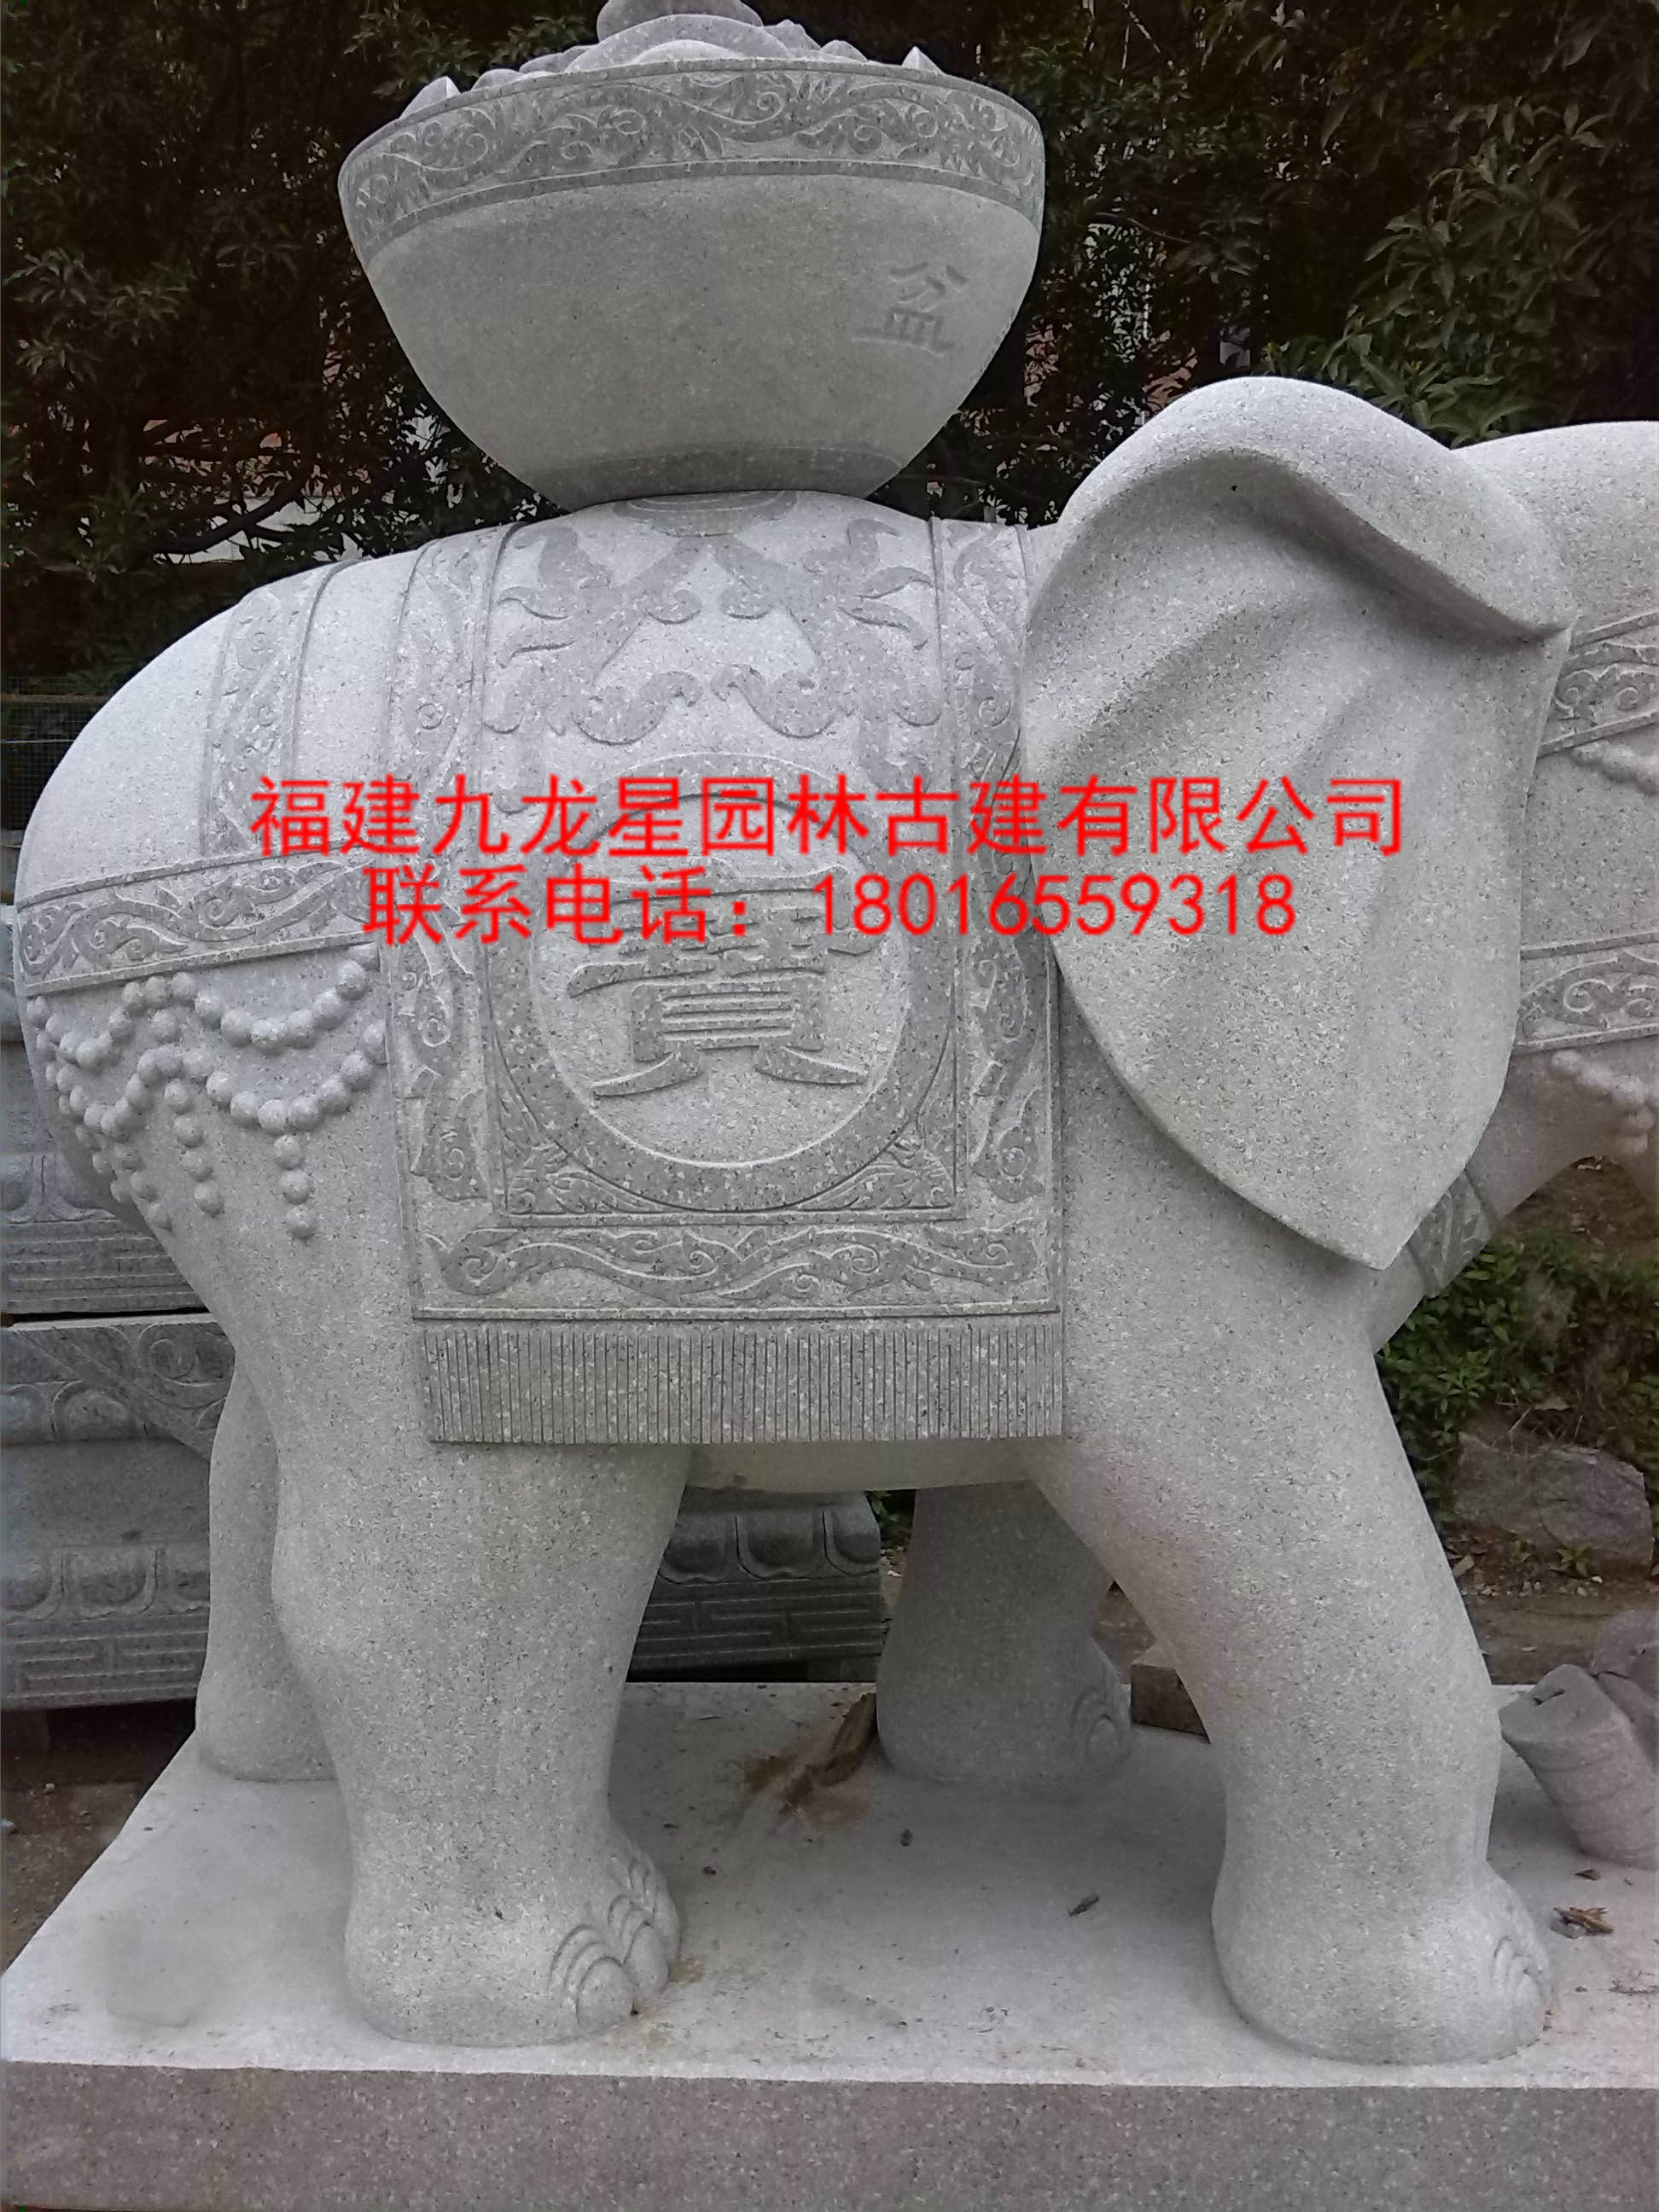 供应石雕象工艺品 汉白玉石雕大象 门口石雕象摆件 门口招财纳福汉白玉石雕大象